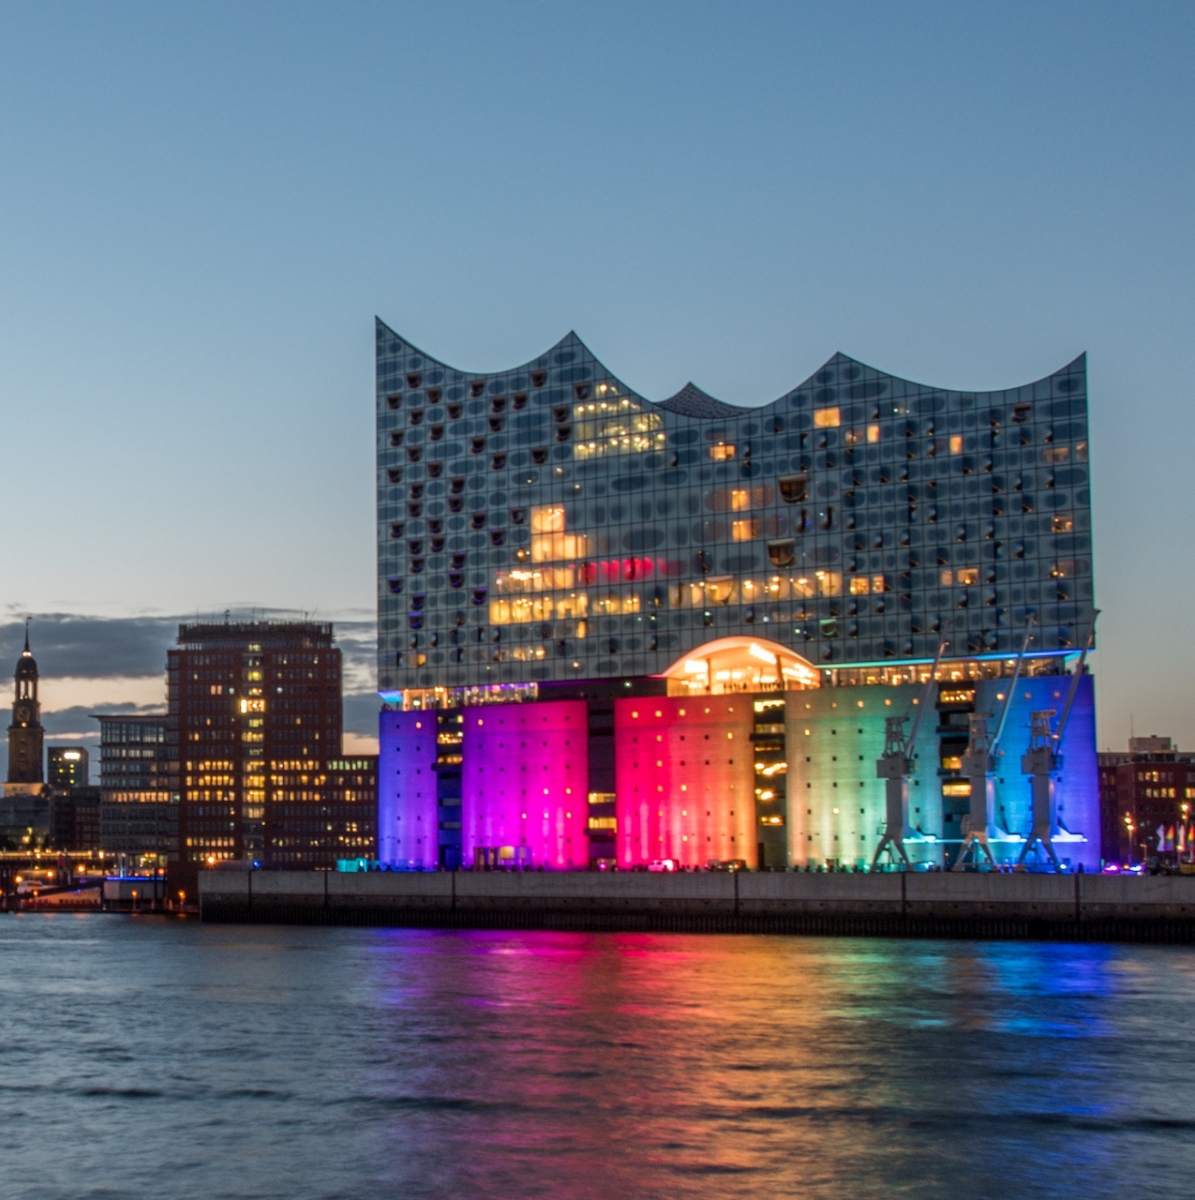 Hambourg, Allemagne, Panorama du port la nuit.  Avec le music-hall illuminé coloré du Christopher Street Day